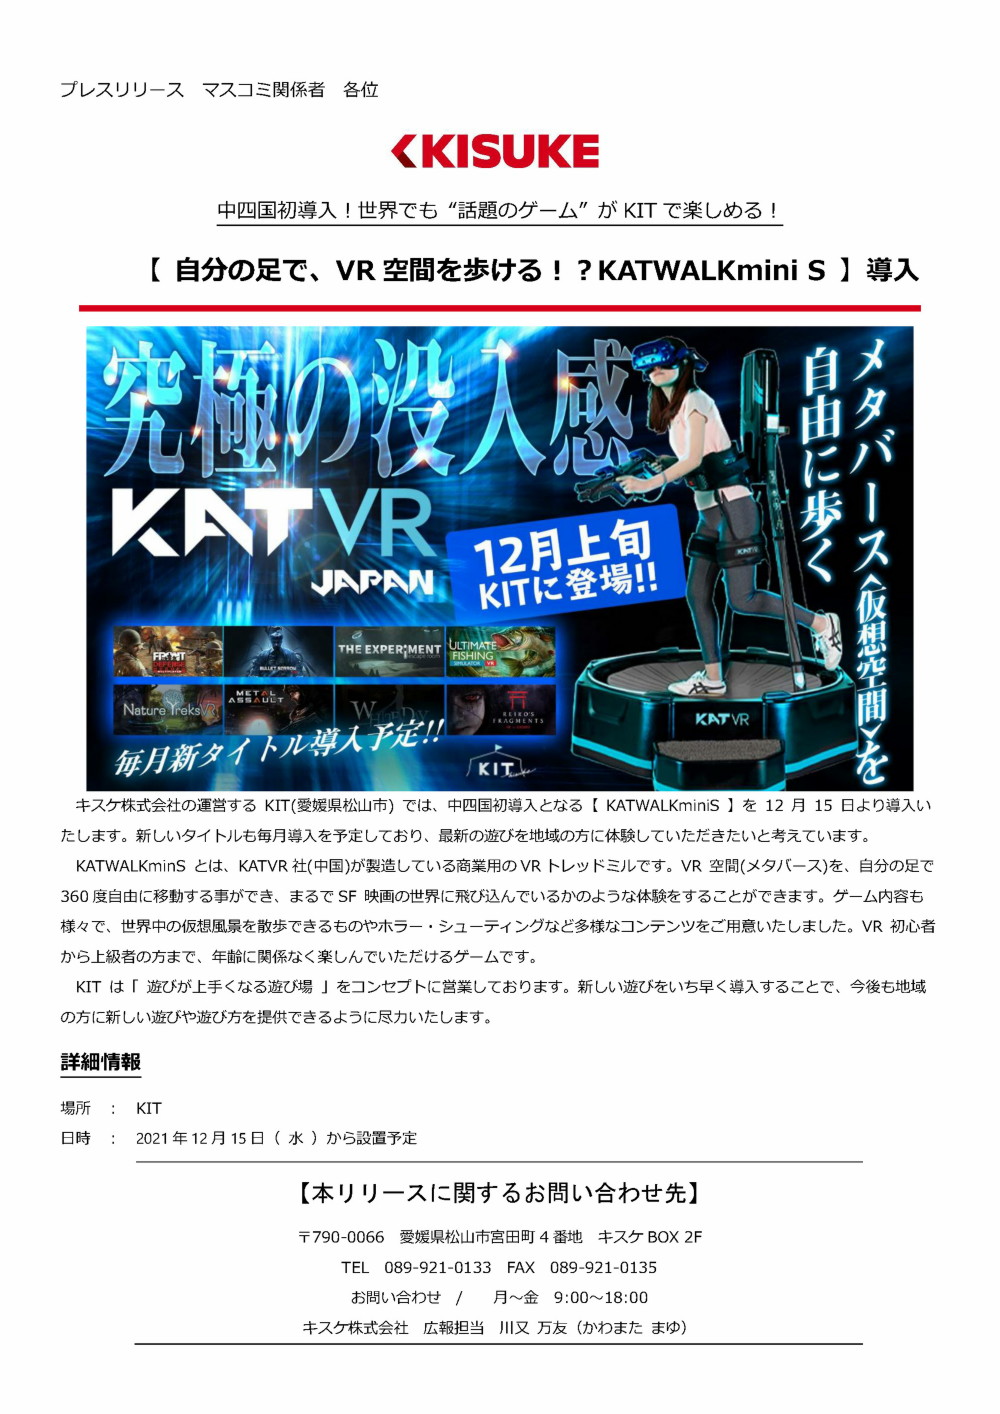 キスケ株式会社の運営するKIT(愛媛県松山市)では、中四国初導入となる【KATWALKminiS】を12月15日より導入いたします。新しいタイトルも毎月導入を予定しており、最新の遊びを地域の方に体験していただきたいと考えています。KATWALKminSとは、KATVR社中国が製造している商業用のVRトレッドミルです。VR空間メタバースを、自分の足で360度自由に移動する事ができ、まるでSF映画の世界に飛び込んでいるかのような体験をすることができます。ゲーム内容も様々で、世界中の仮想風景を散歩できるものやホラー・シューティングなど多様なコンテンツをご用意いたしました。VR初心者から上級者の方まで、年齢に関係なく楽しんでいただけるゲームです。KITは「遊びが上手くなる遊び場」をコンセプトに営業しております。新しい遊びをいち早く導入することで、今後も地域の方に新しい遊びや遊び方を提供できるように尽力いたします。 